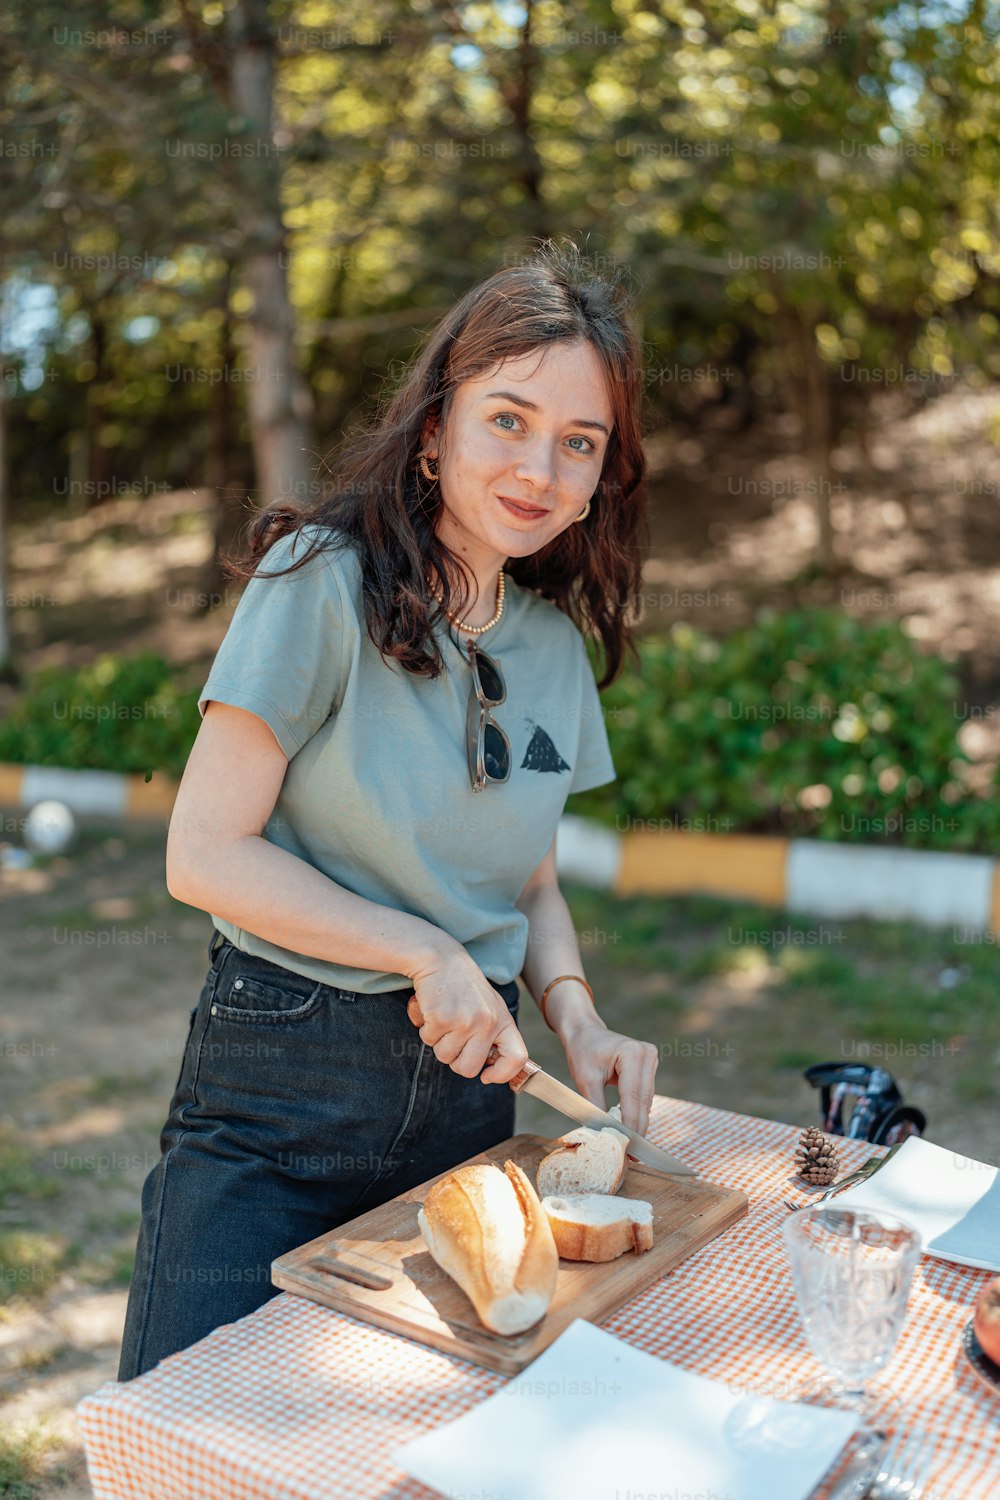 a woman cutting bread on a cutting board